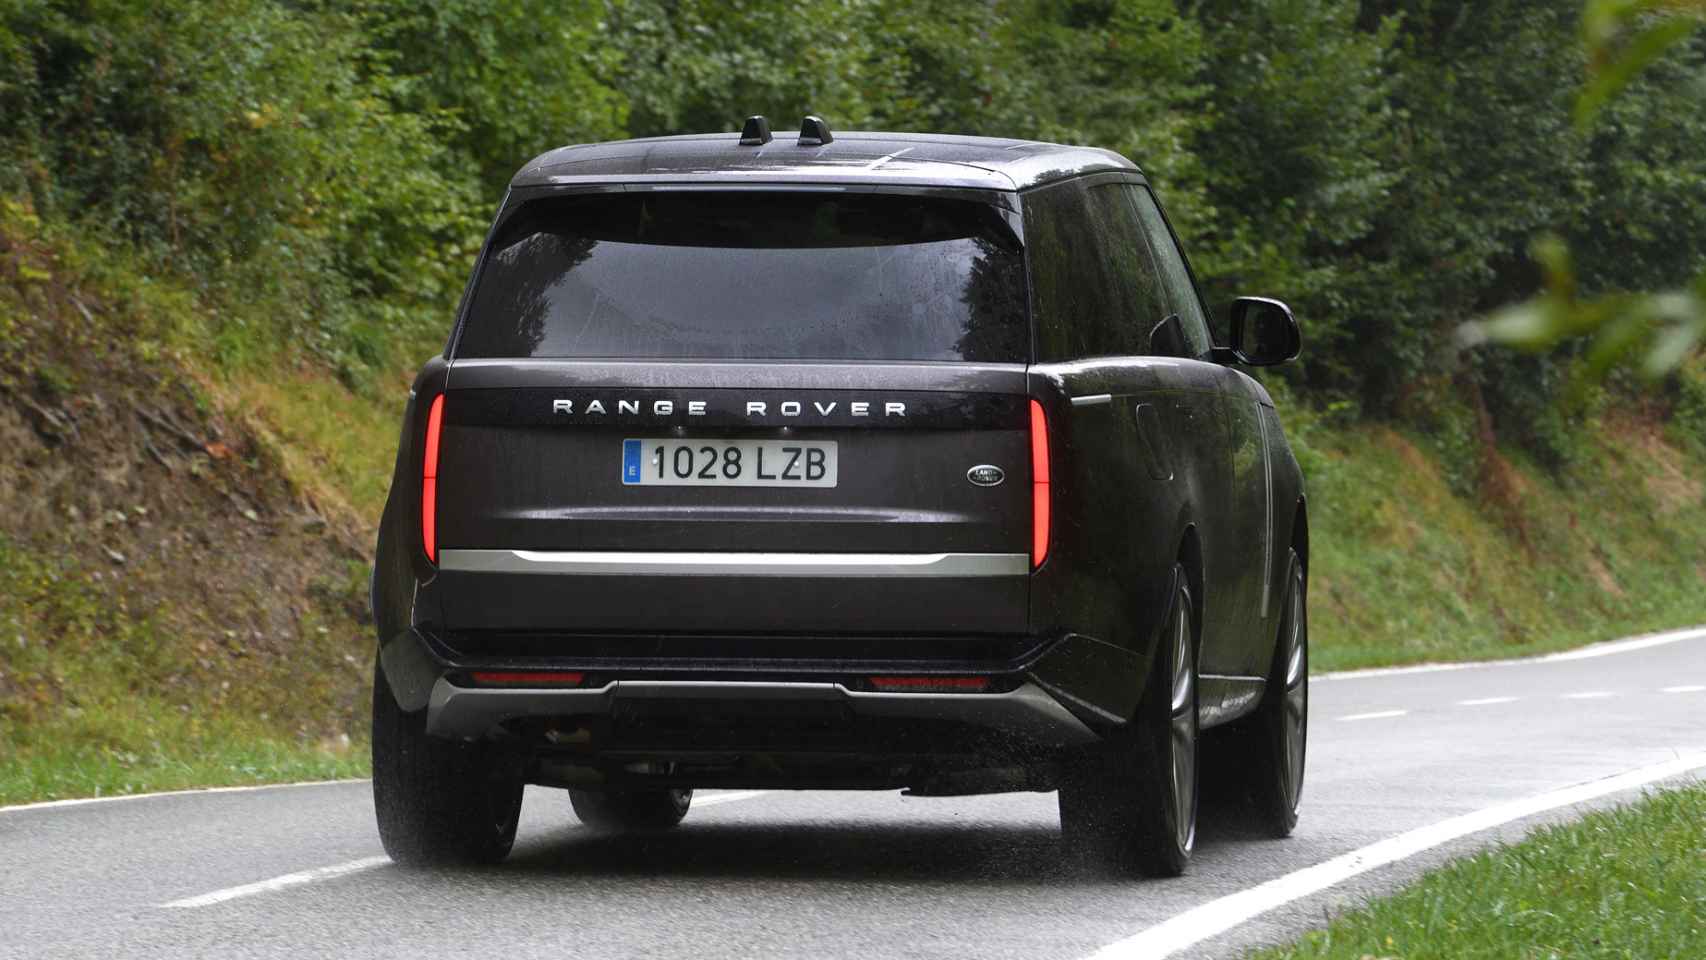 La parte trasera del Range Rover cuenta ahora con unas ópticas verticales.